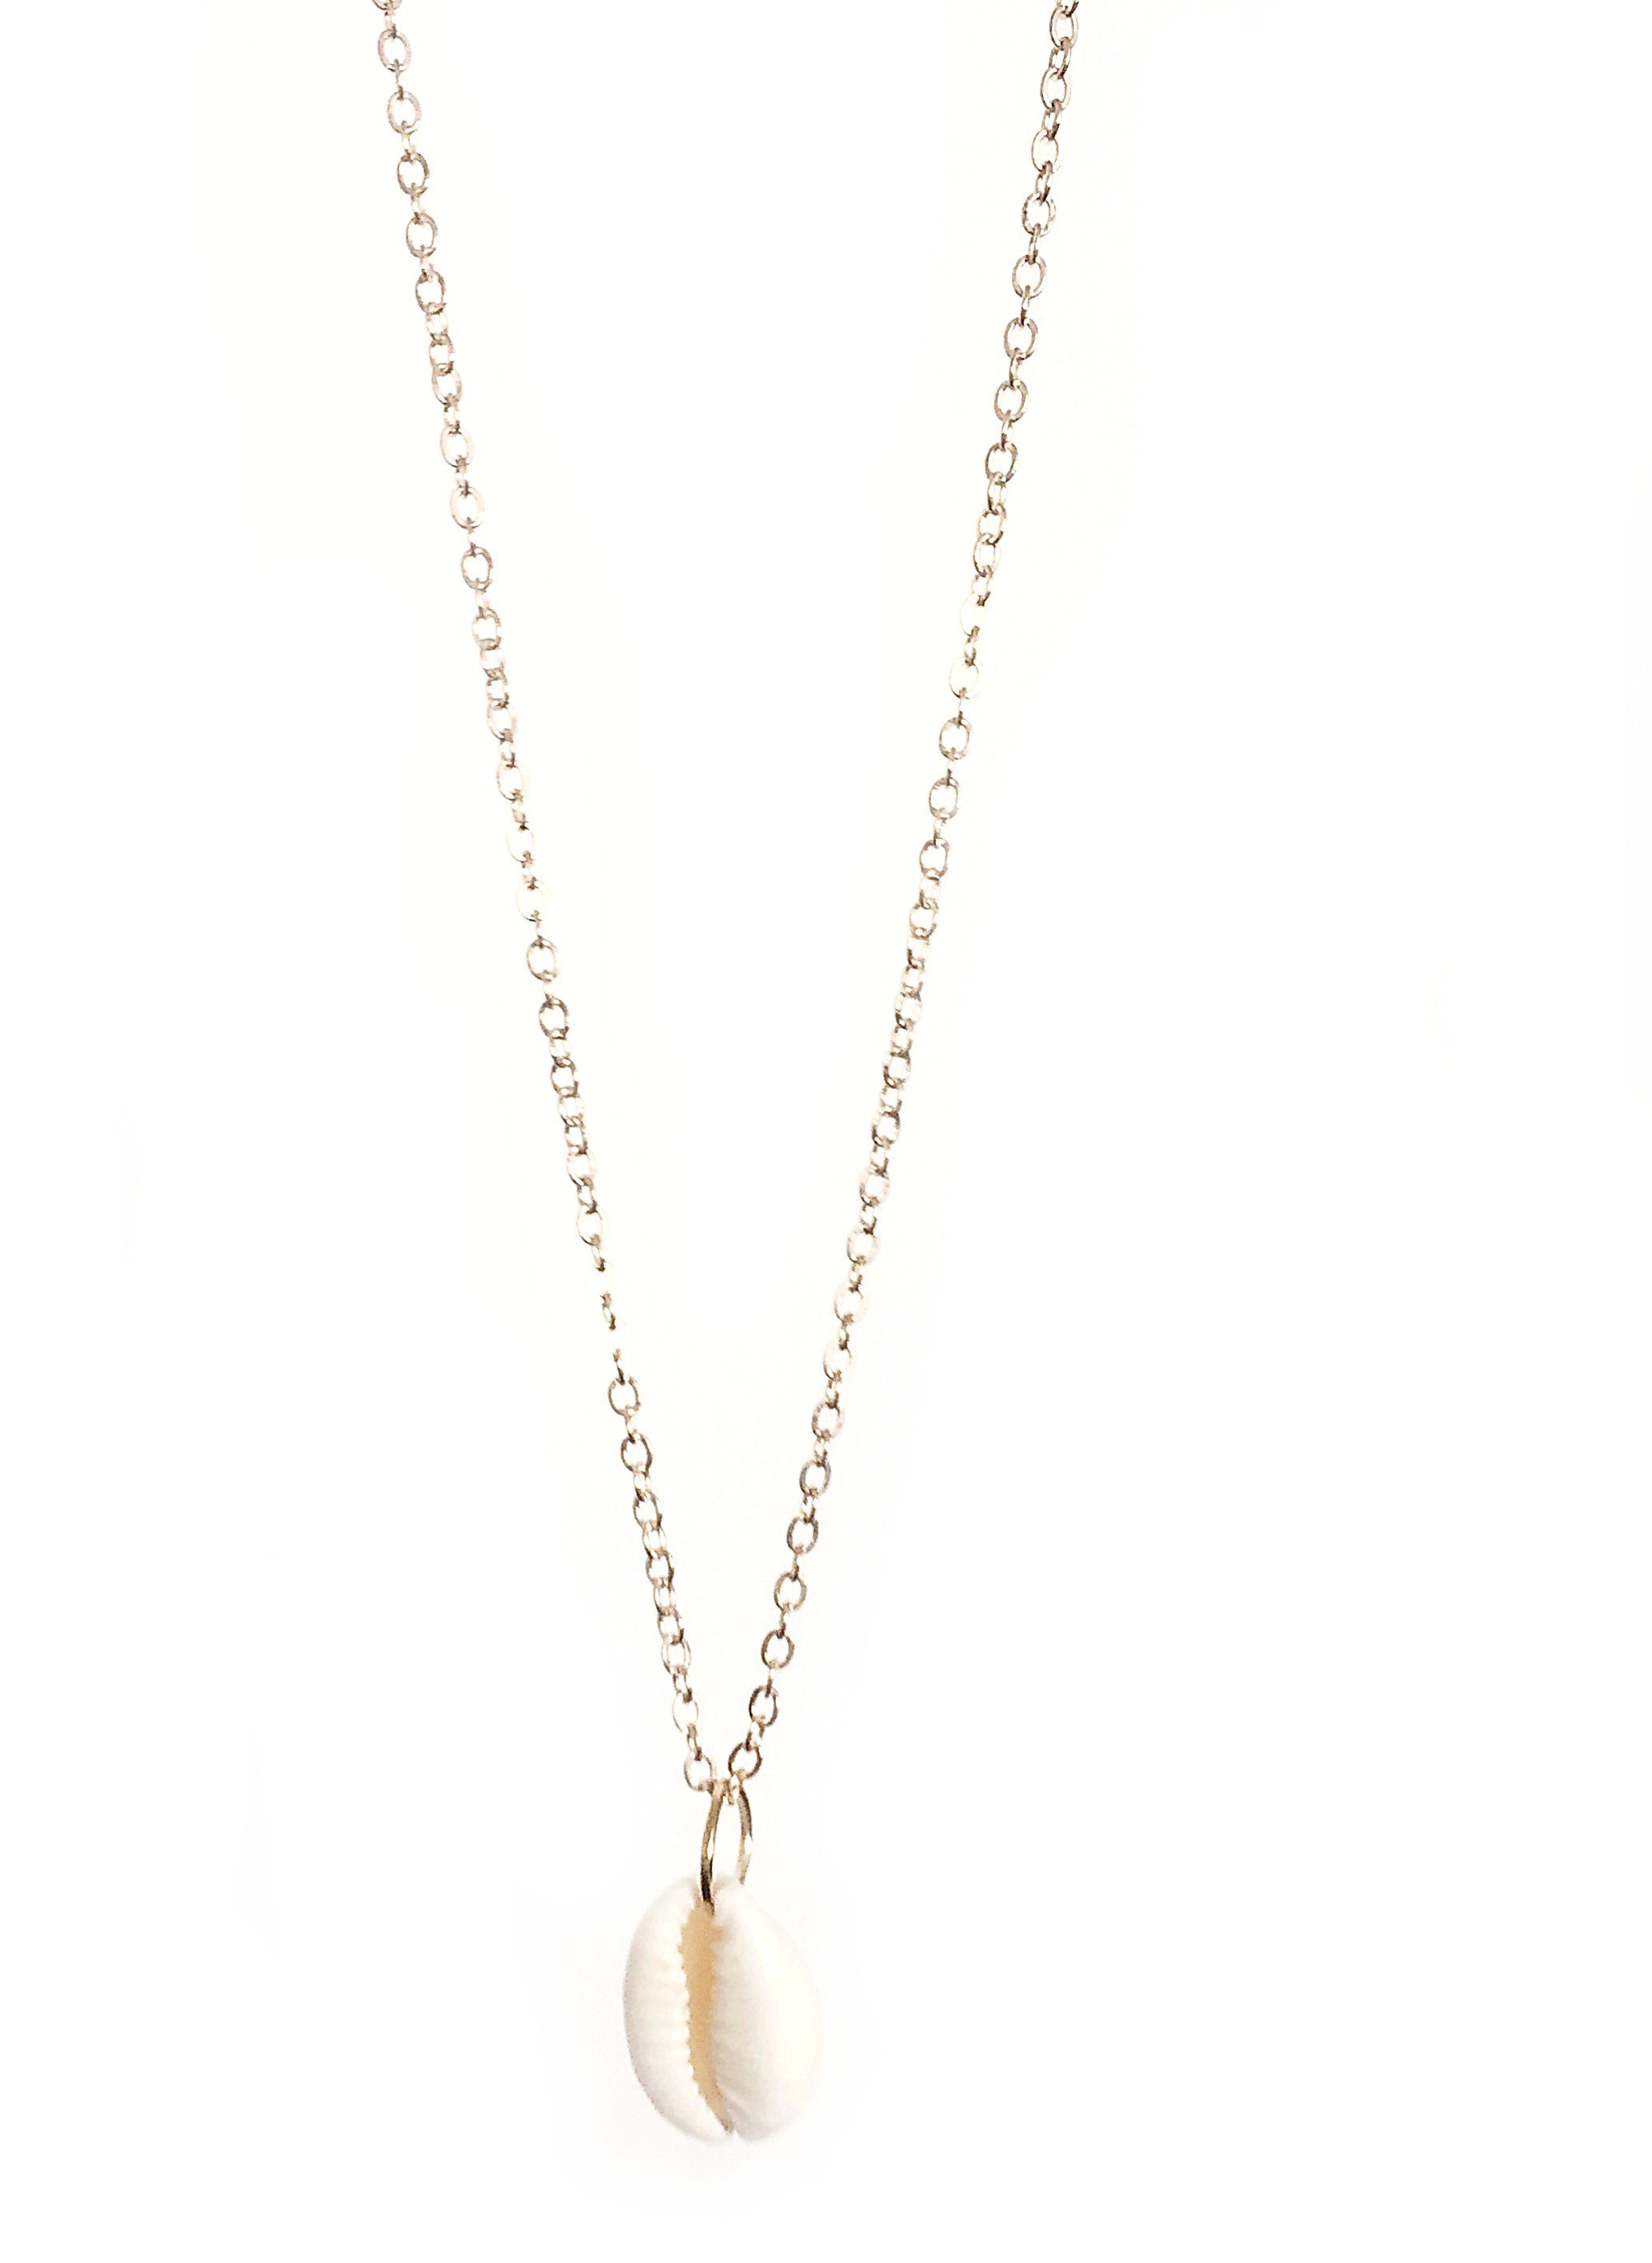 Crystal and Sage Jewelry Kette mit Anhänger Kauri Muschel Halskette gold, mit echter Kauri Muschel | Ketten mit Anhänger